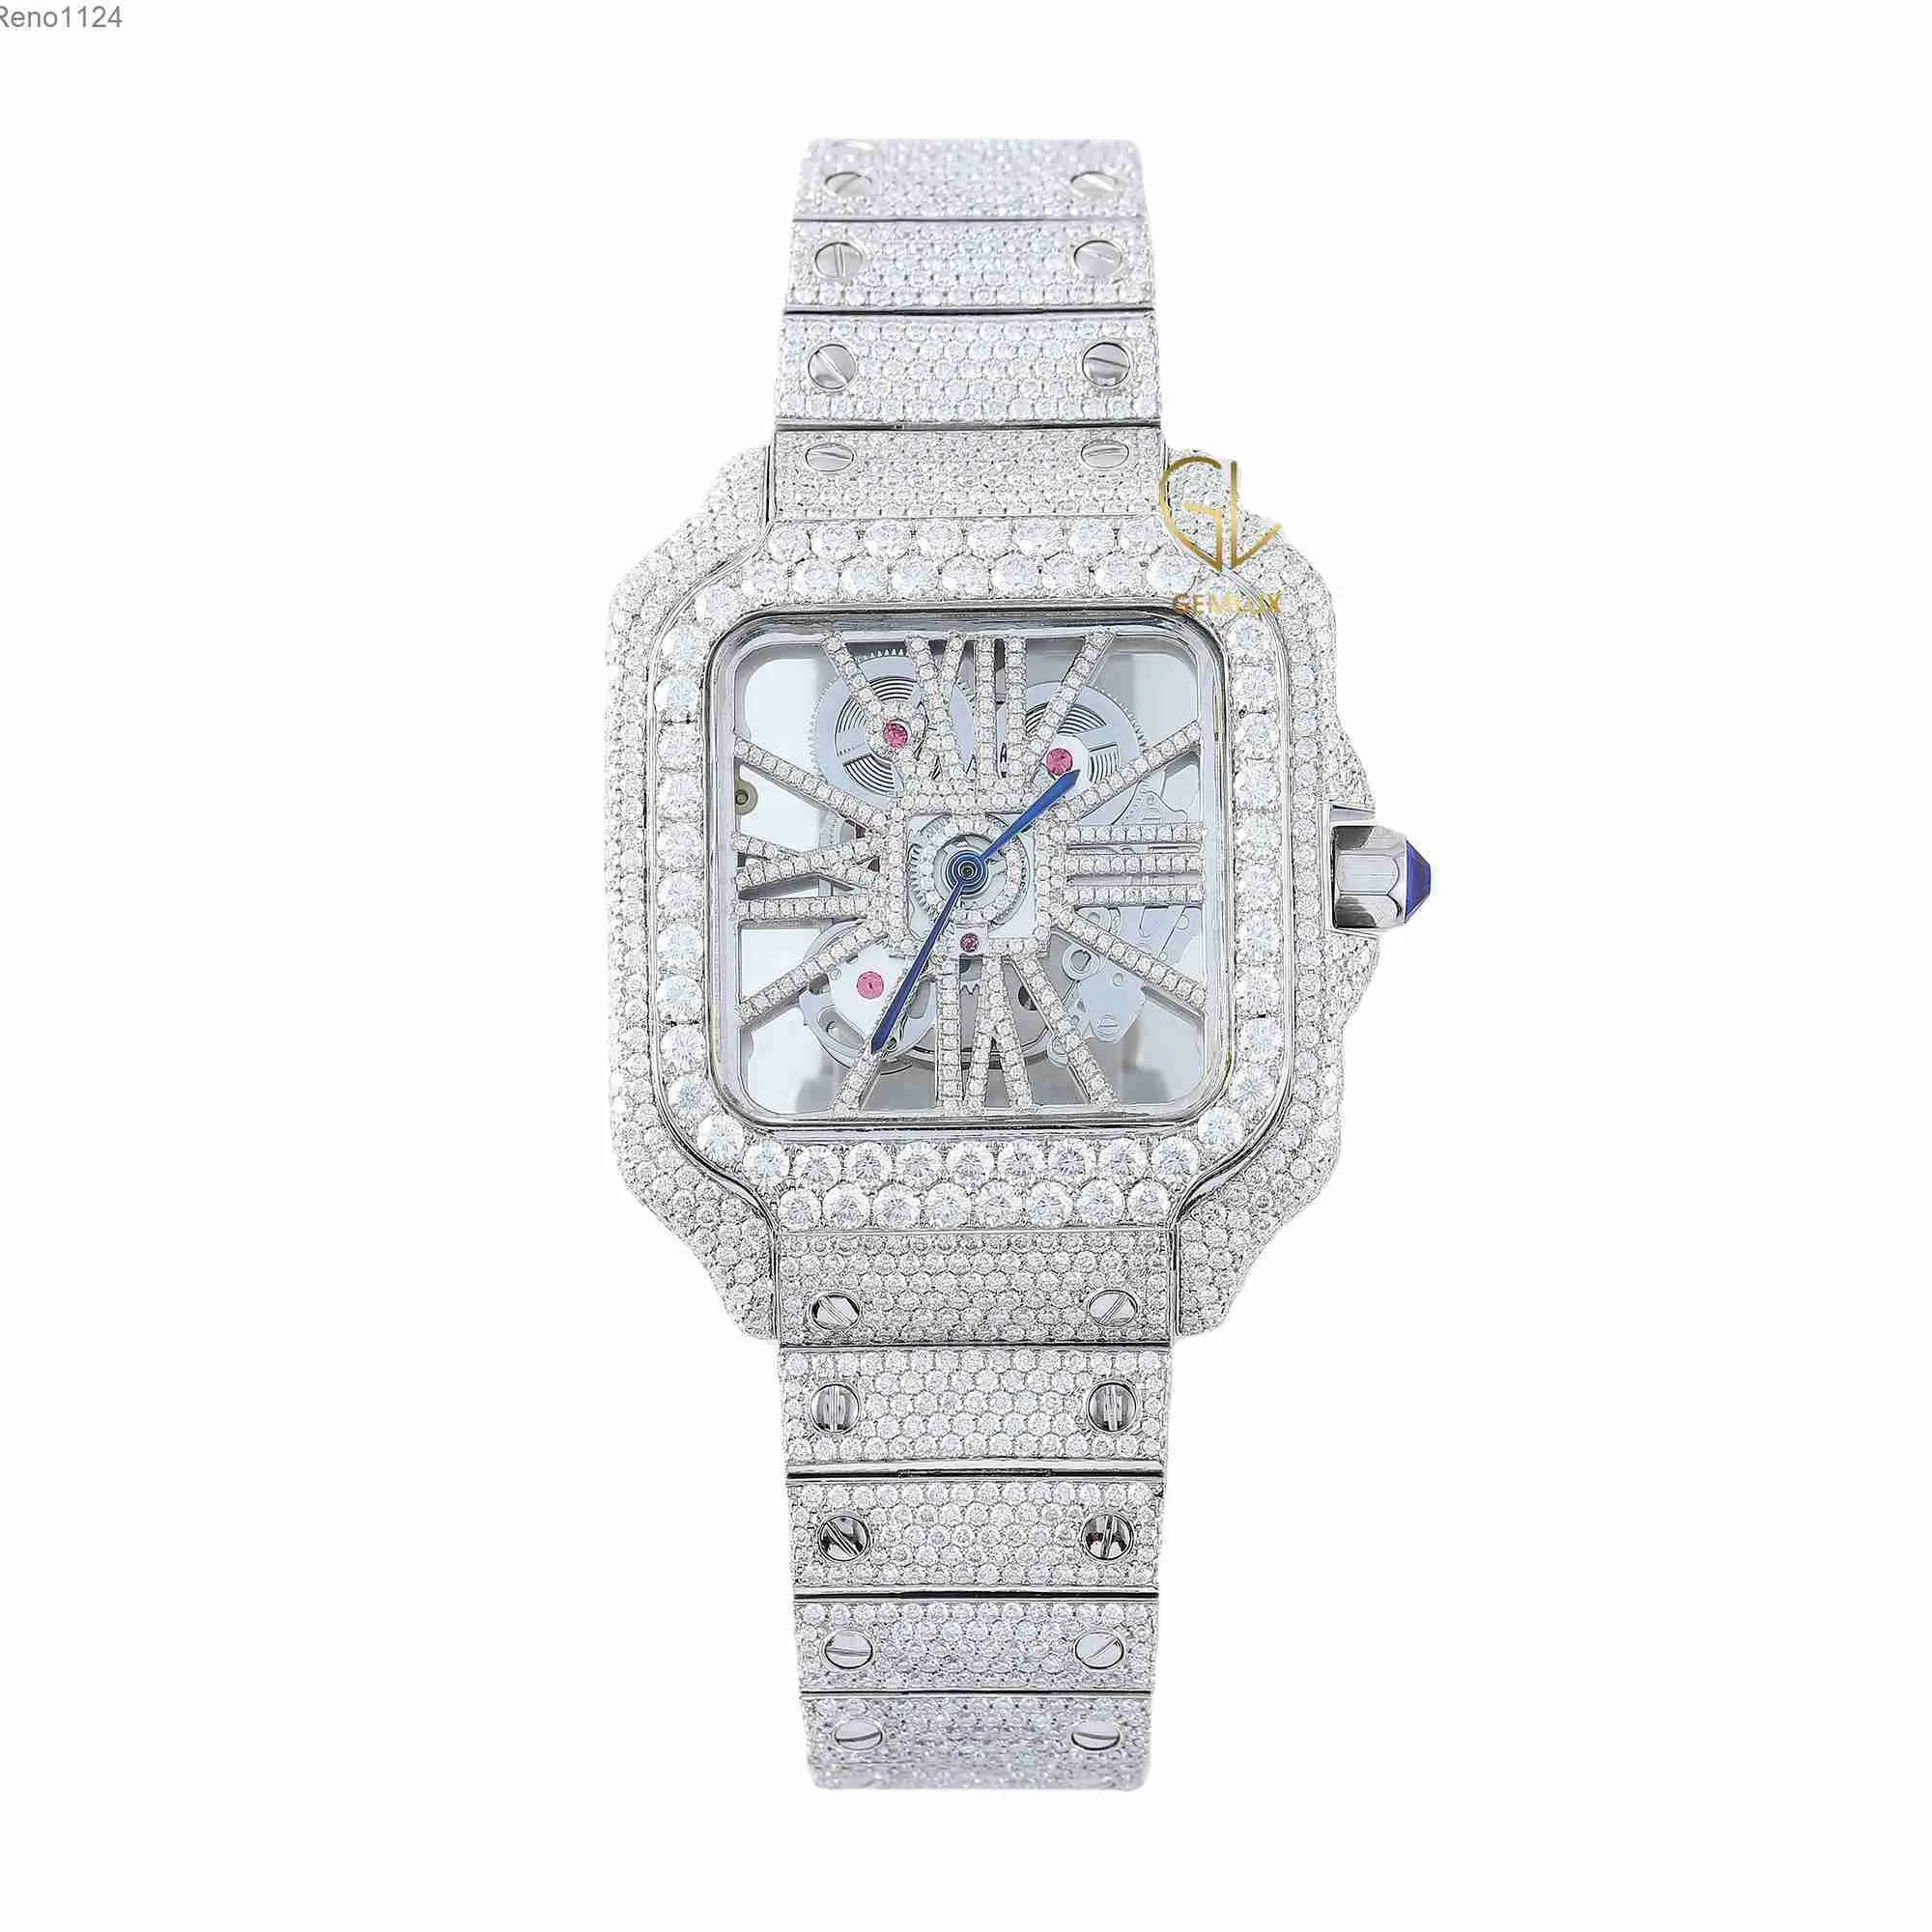 D VVS rotondo brillante taglio cristallo moissanite diamante nuovo gioielli personalizzati alla moda uomini affascinanti orologio da polso completamente ghiacciato